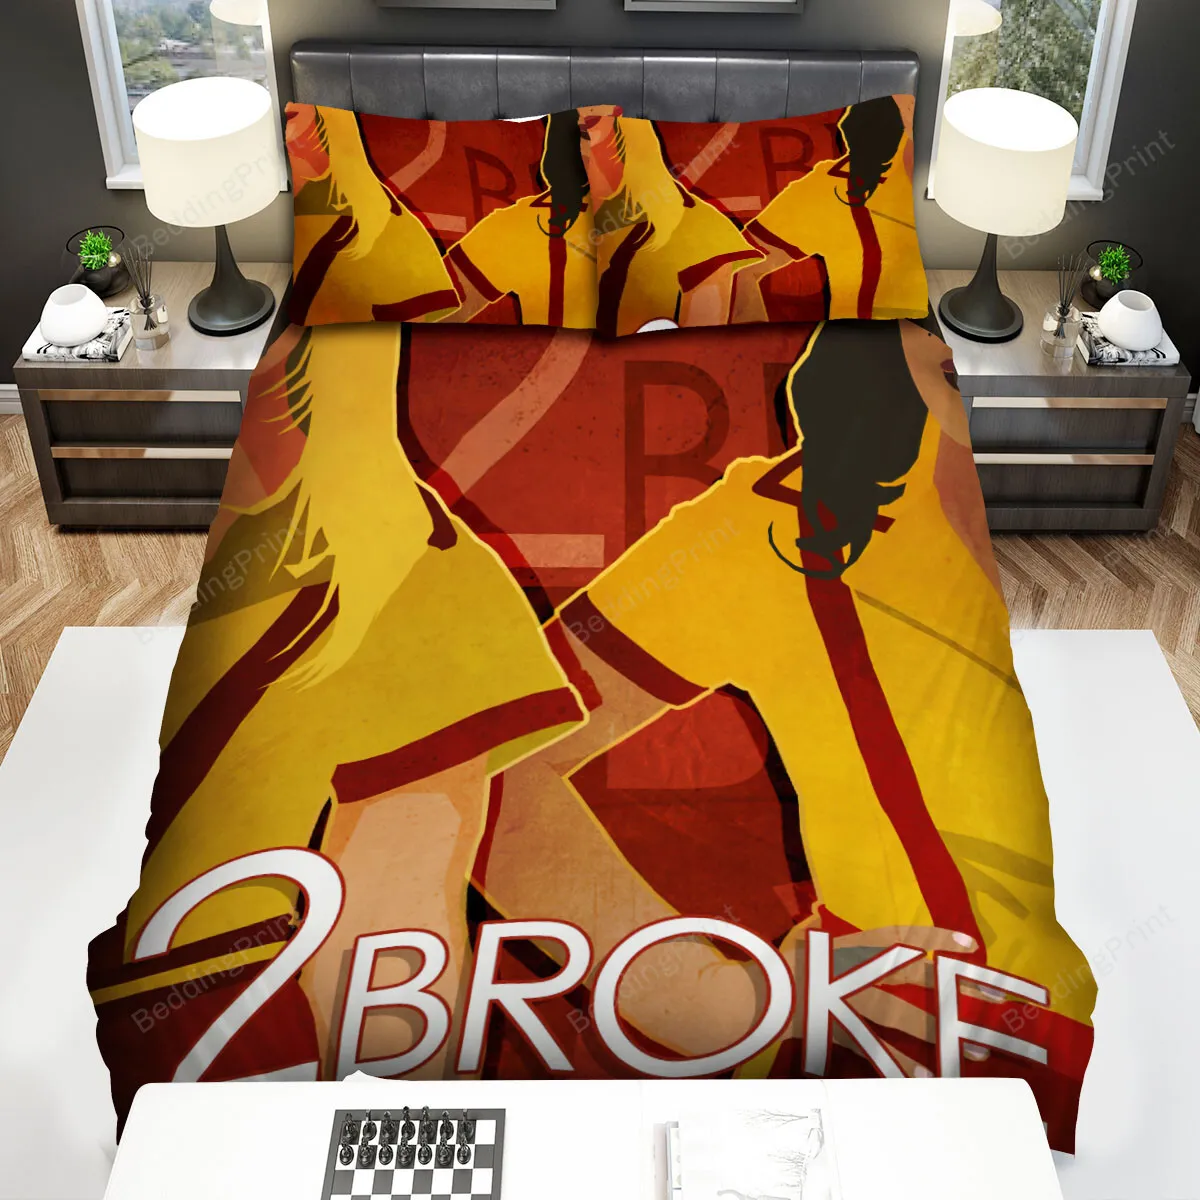 2 Broke Girls (20112017) Movie Illustration Bed Sheets Spread Comforter Duvet Cover Bedding Sets